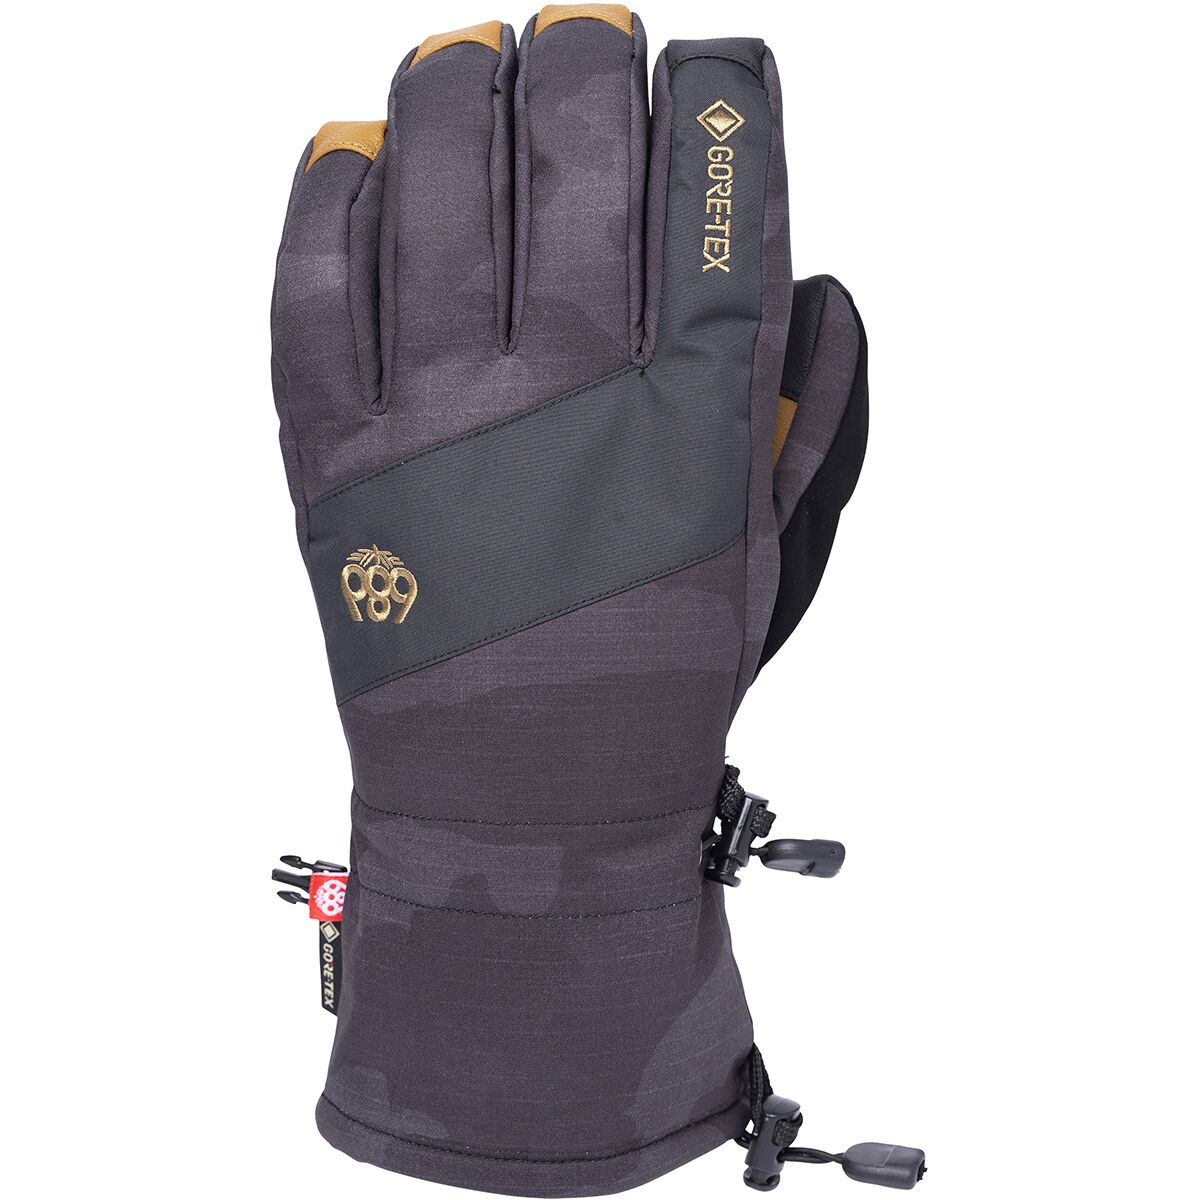 686 Linear GORE-TEX Glove - Men's Black Camo